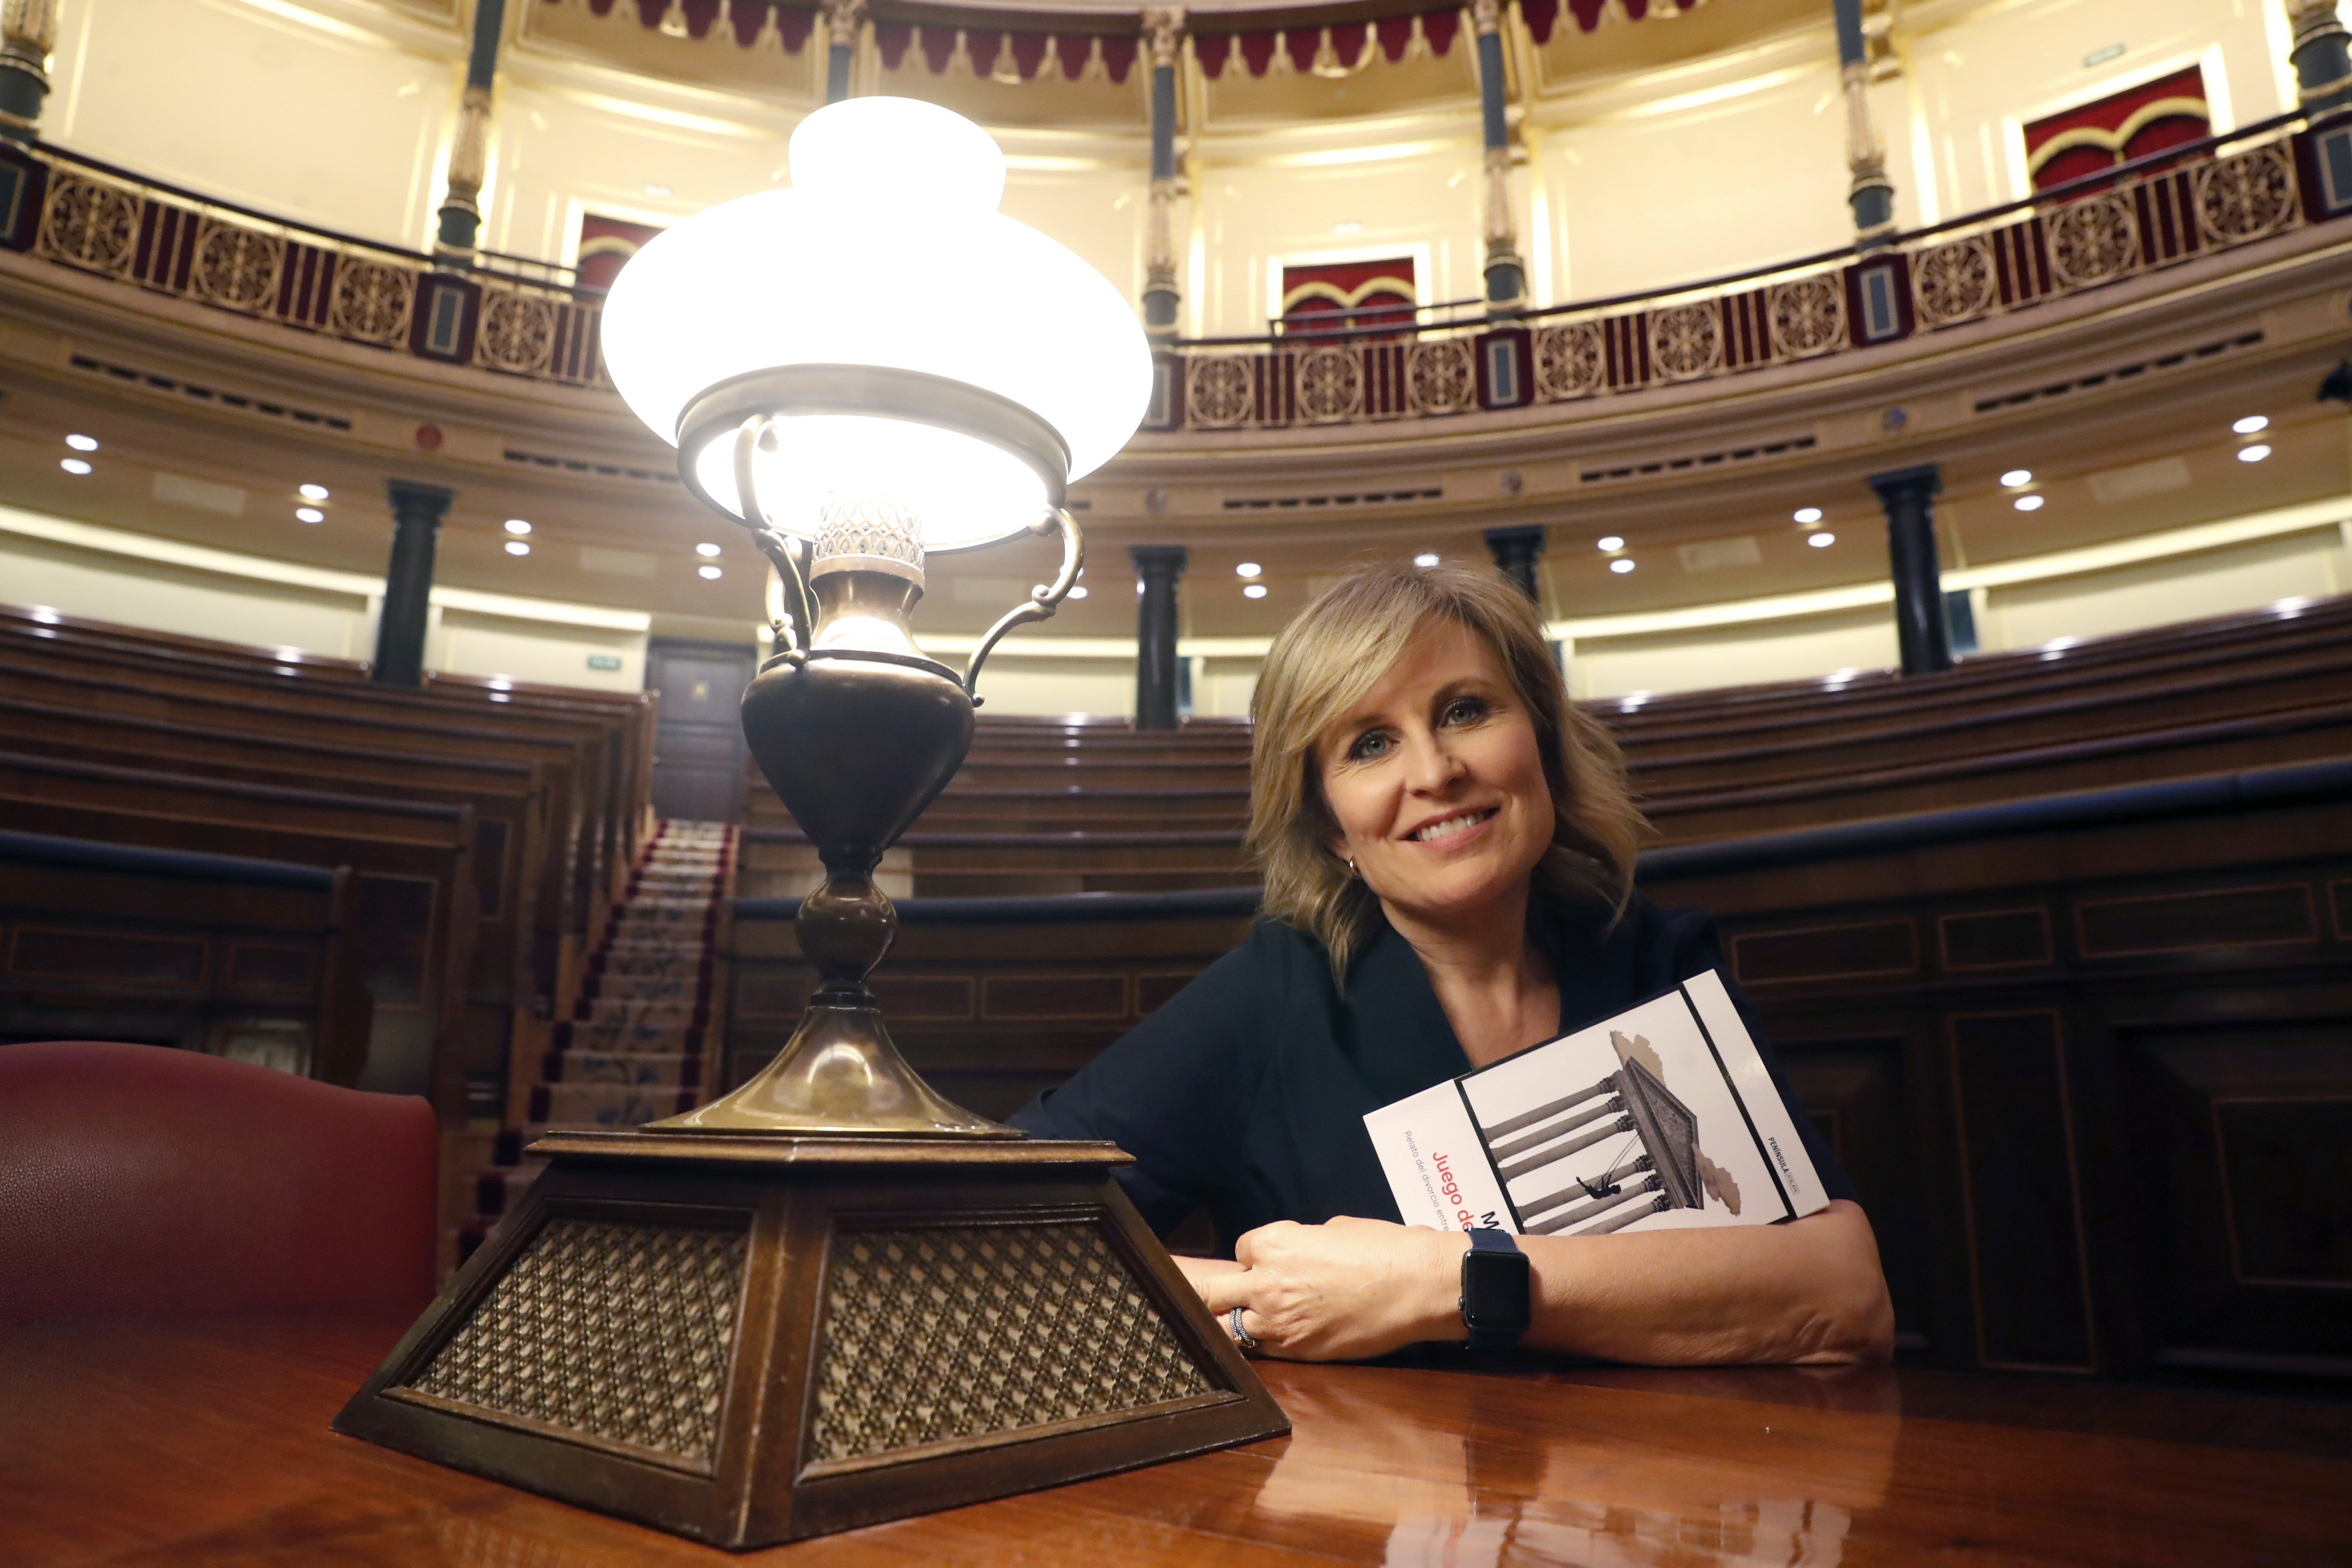 La periodista Maria Rey posa en el Congreso de los Diputados tras la presentación de su libro sobre la vida parlamentaria española